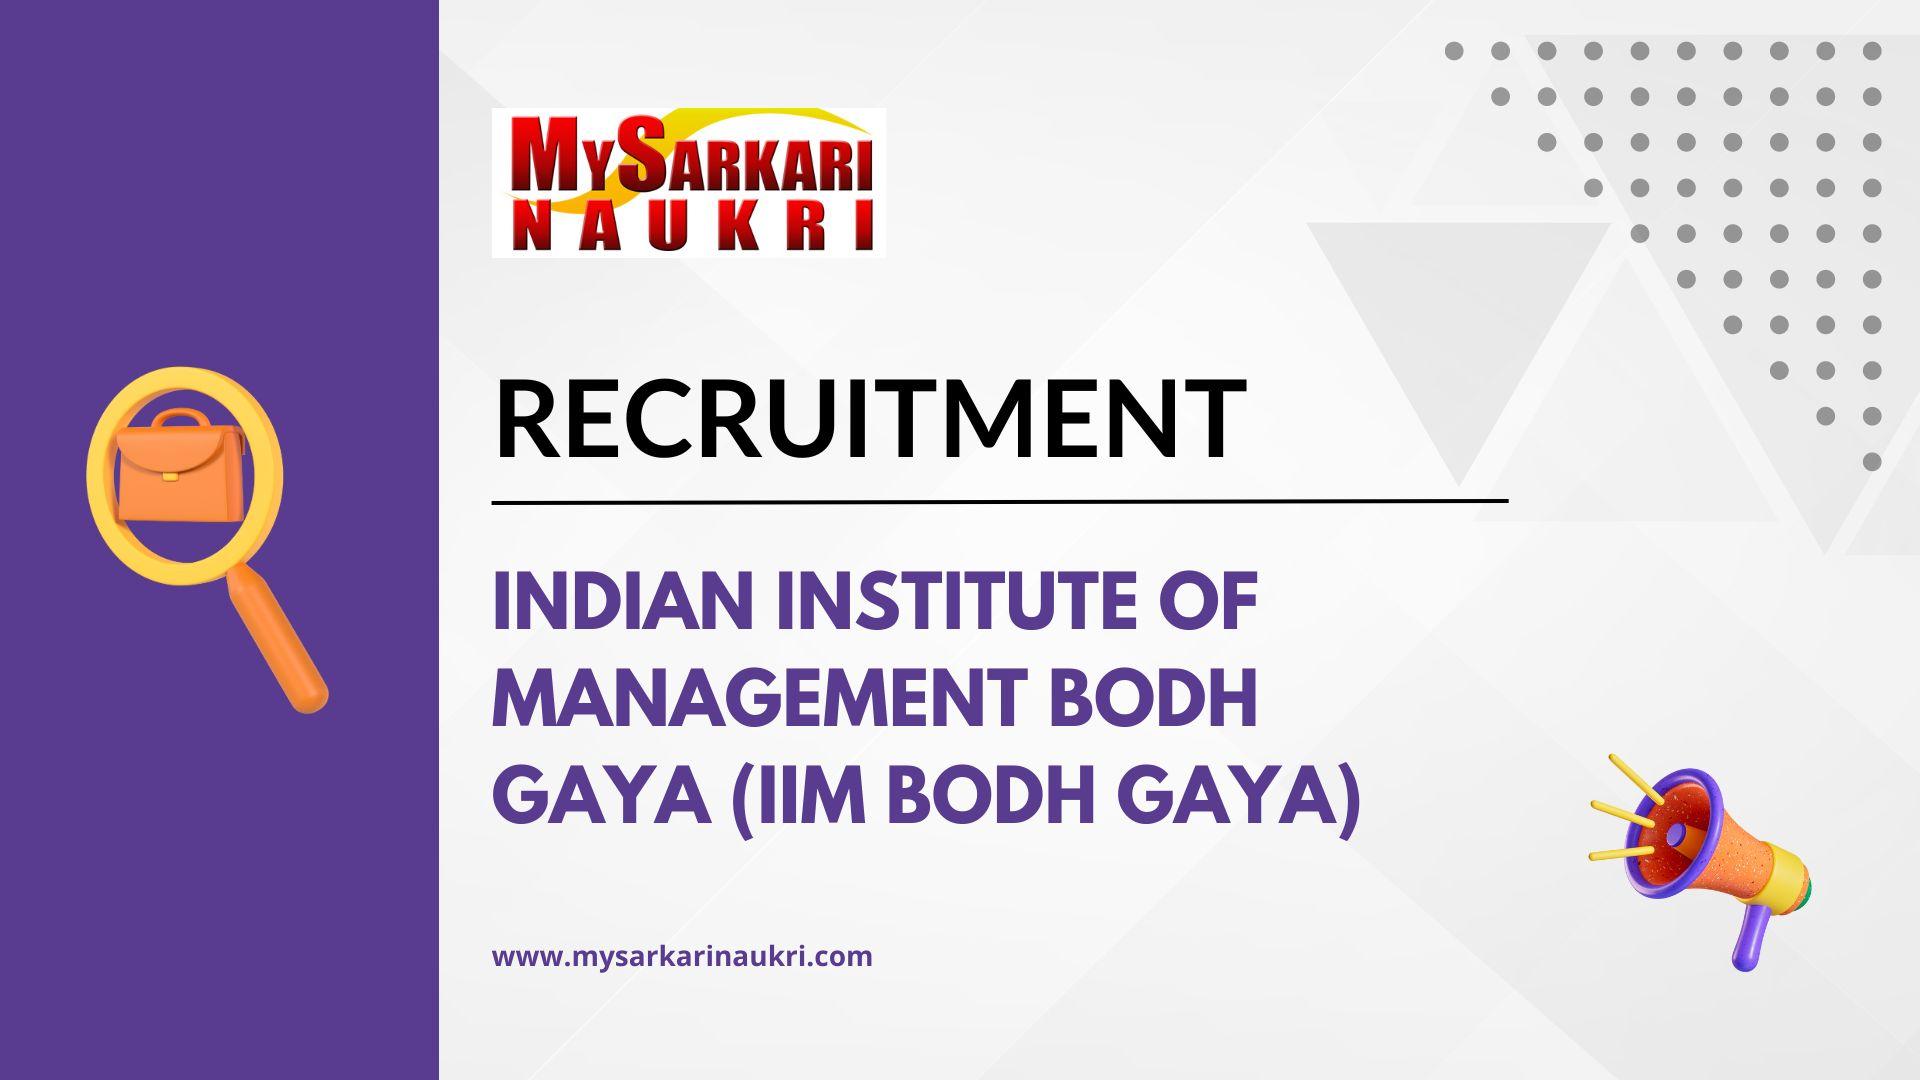 Indian Institute of Management Bodh Gaya (IIM Bodh Gaya)